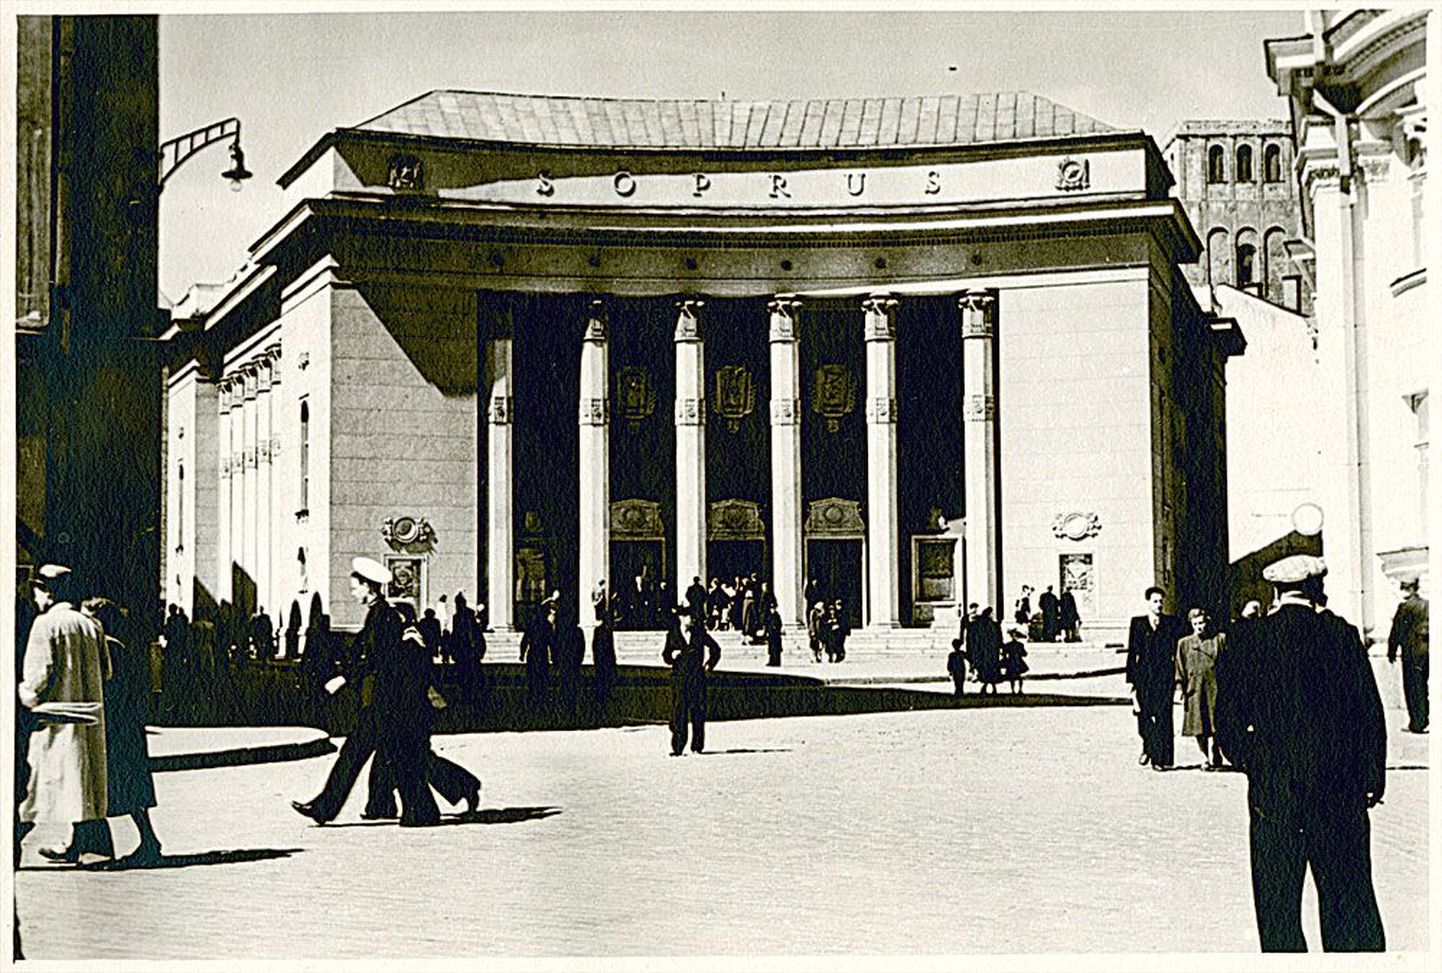 Stalinistliku arhitektuuri lipulaev Tallinna kino Sõprus on vanim siiani tegutsev kinohoone Eestis. Pildistatud pärast valmimist 1950ndate keskel.